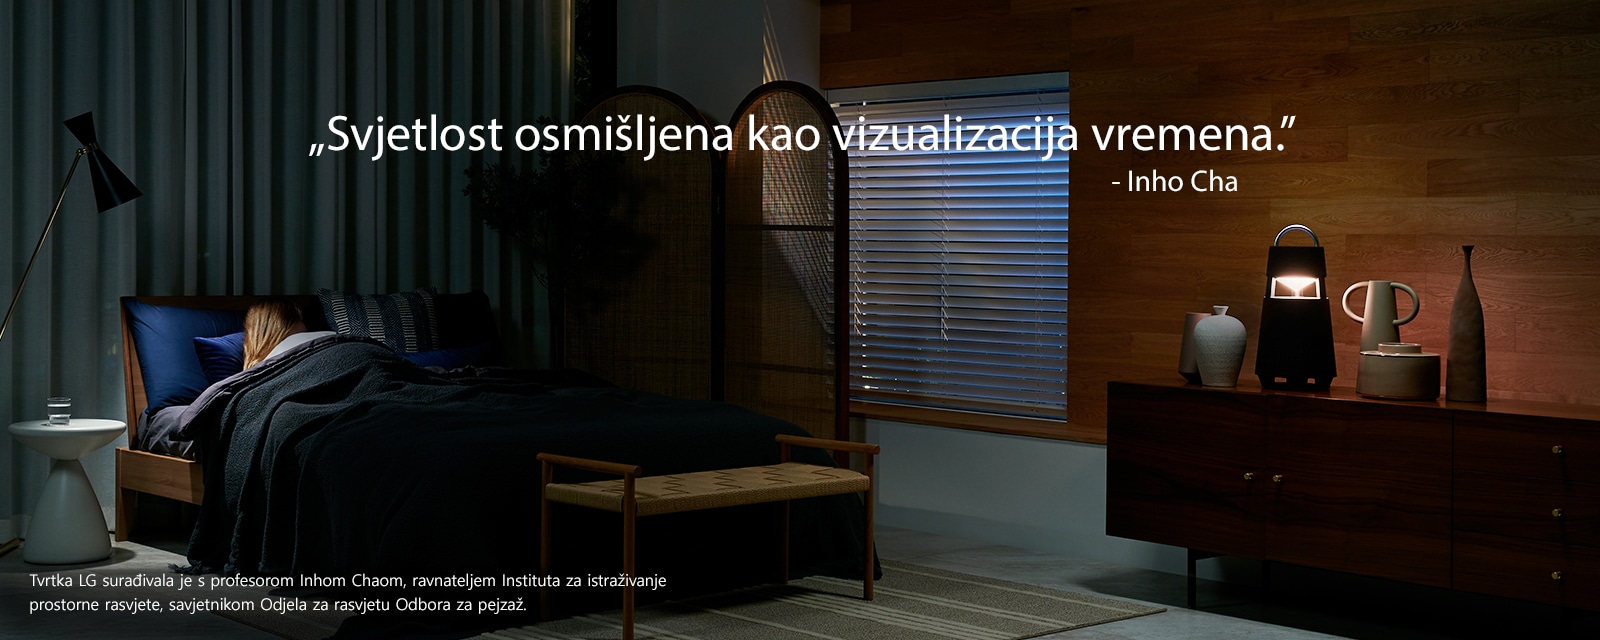 Slika uređaja XBOOM 360 koji svijetli na polici u mračnoj prostoriji. Tekst „Svjetlost osmišljena kao vizualizacija vremena” nalazi se na slici.